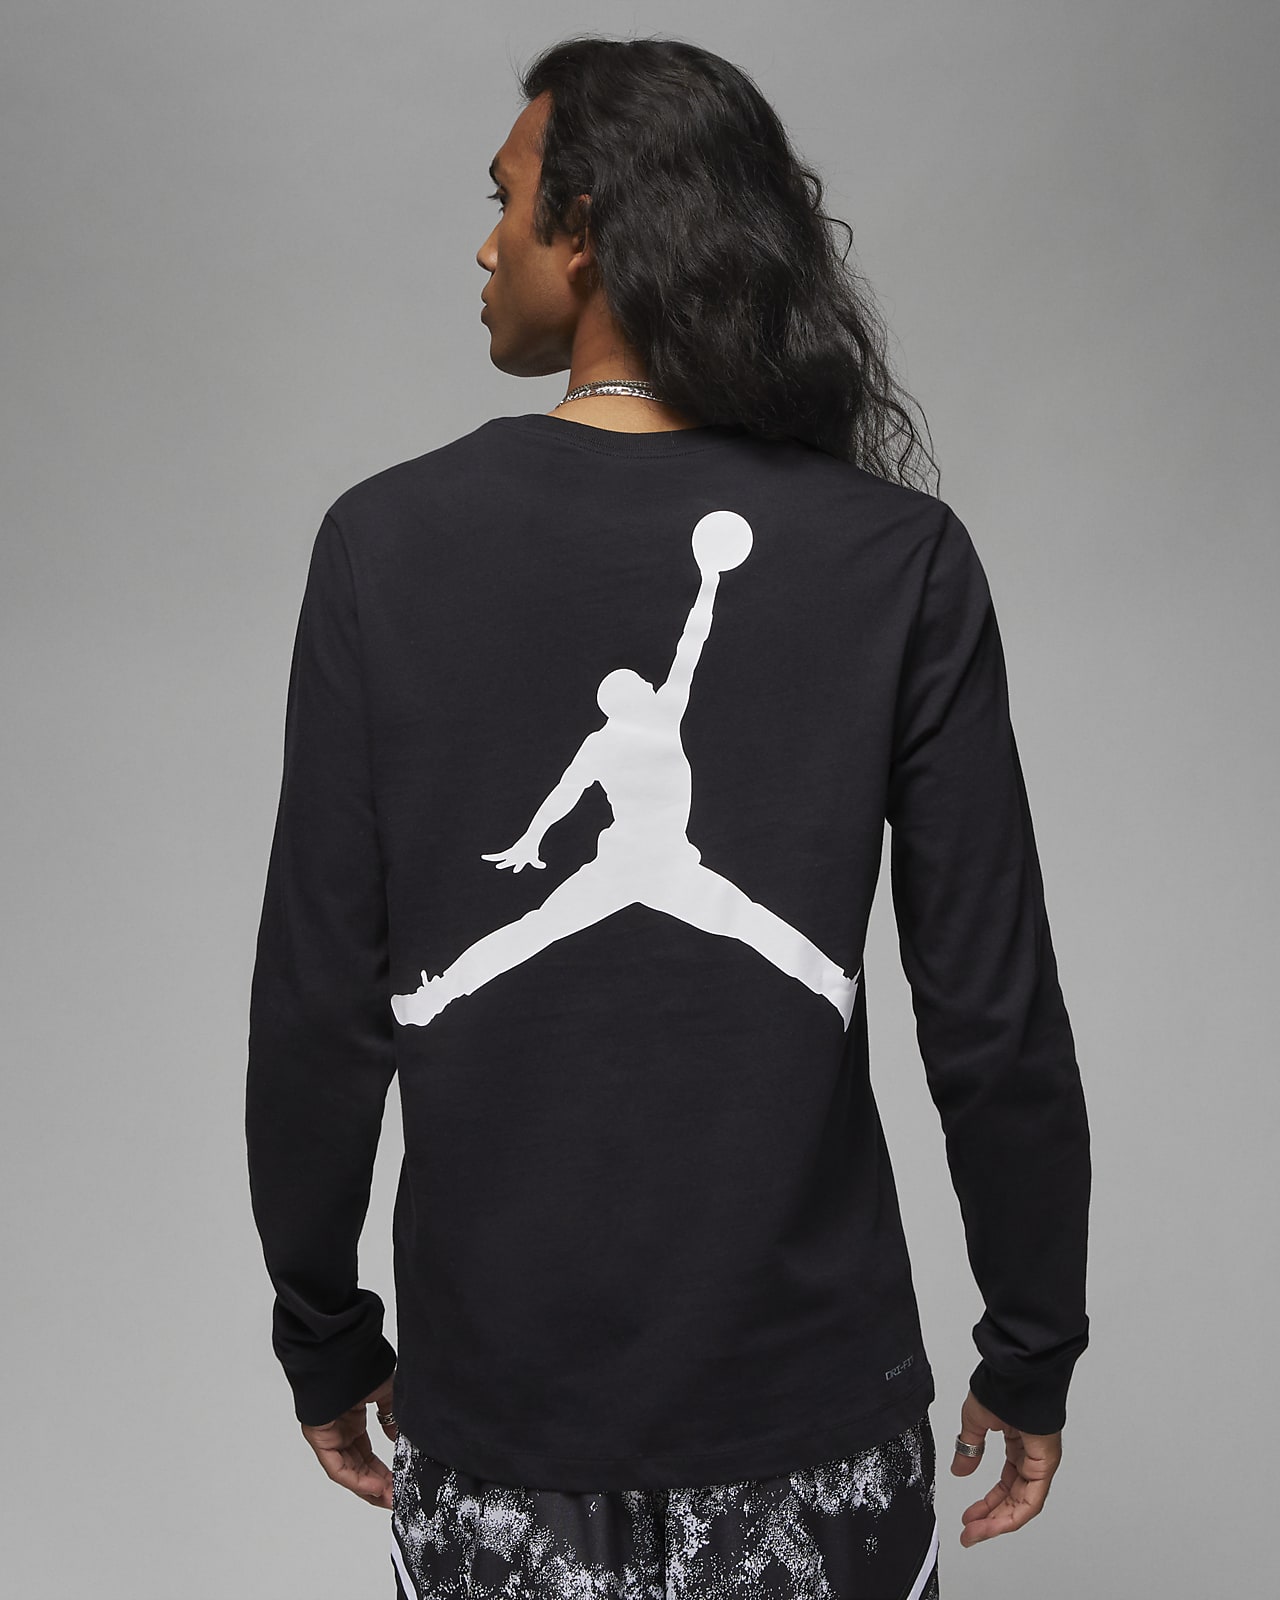 Nike Air Jordan All Season Men's Long Sleeve Top  Long sleeve tops men,  Long sleeve tshirt men, Compression shirt